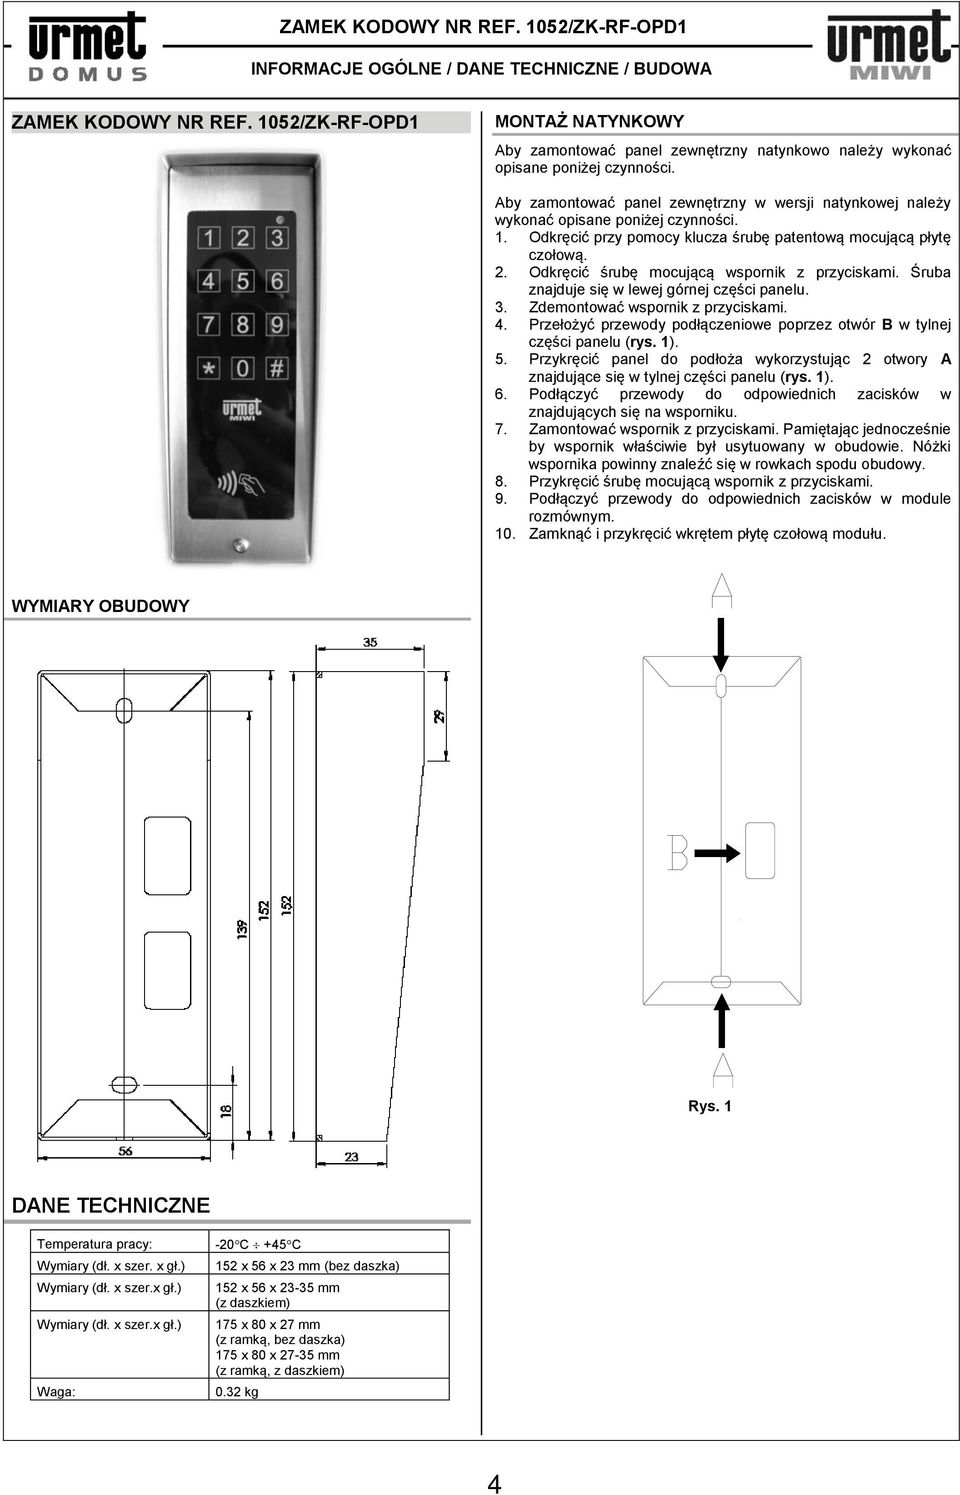 Aby zamontować panel zewnętrzny w wersji natynkowej należy wykonać opisane poniżej czynności. 1. Odkręcić przy pomocy klucza śrubę patentową mocującą płytę czołową. 2.